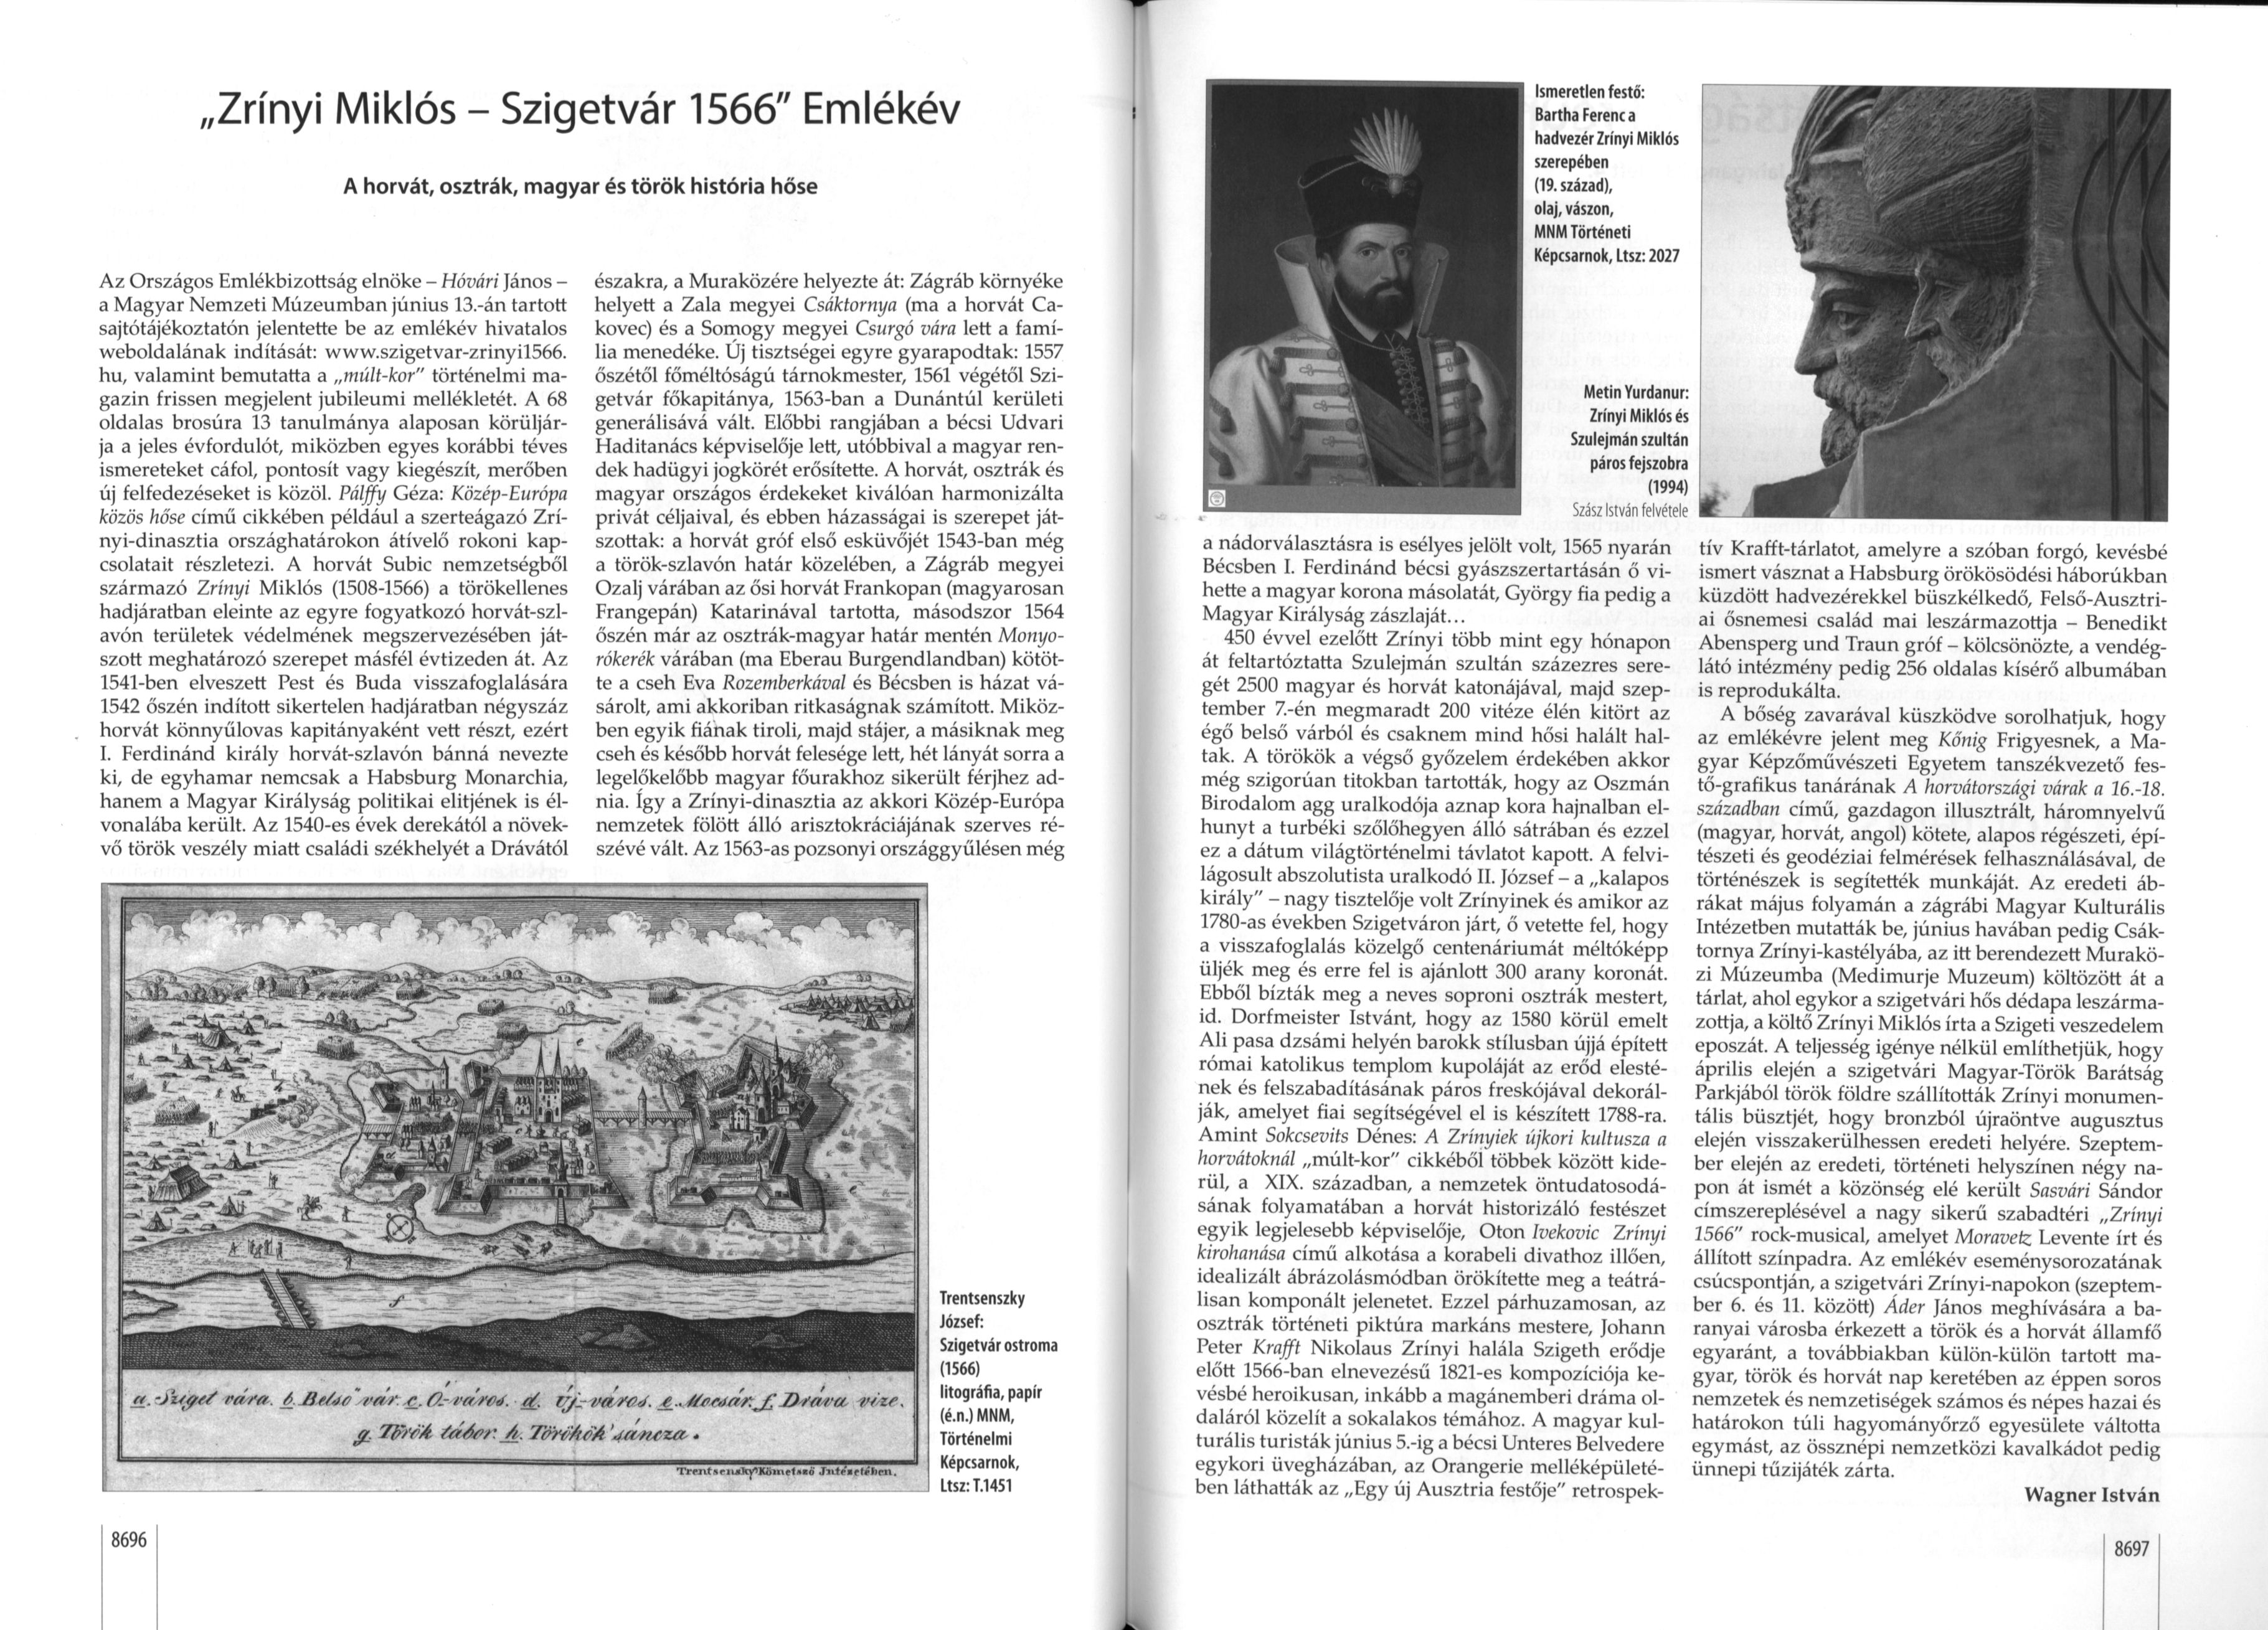 "Zrínyi Miklós - Szigetvár 1566" Emlékév A horvát, osztrák, magyar és török história hőse